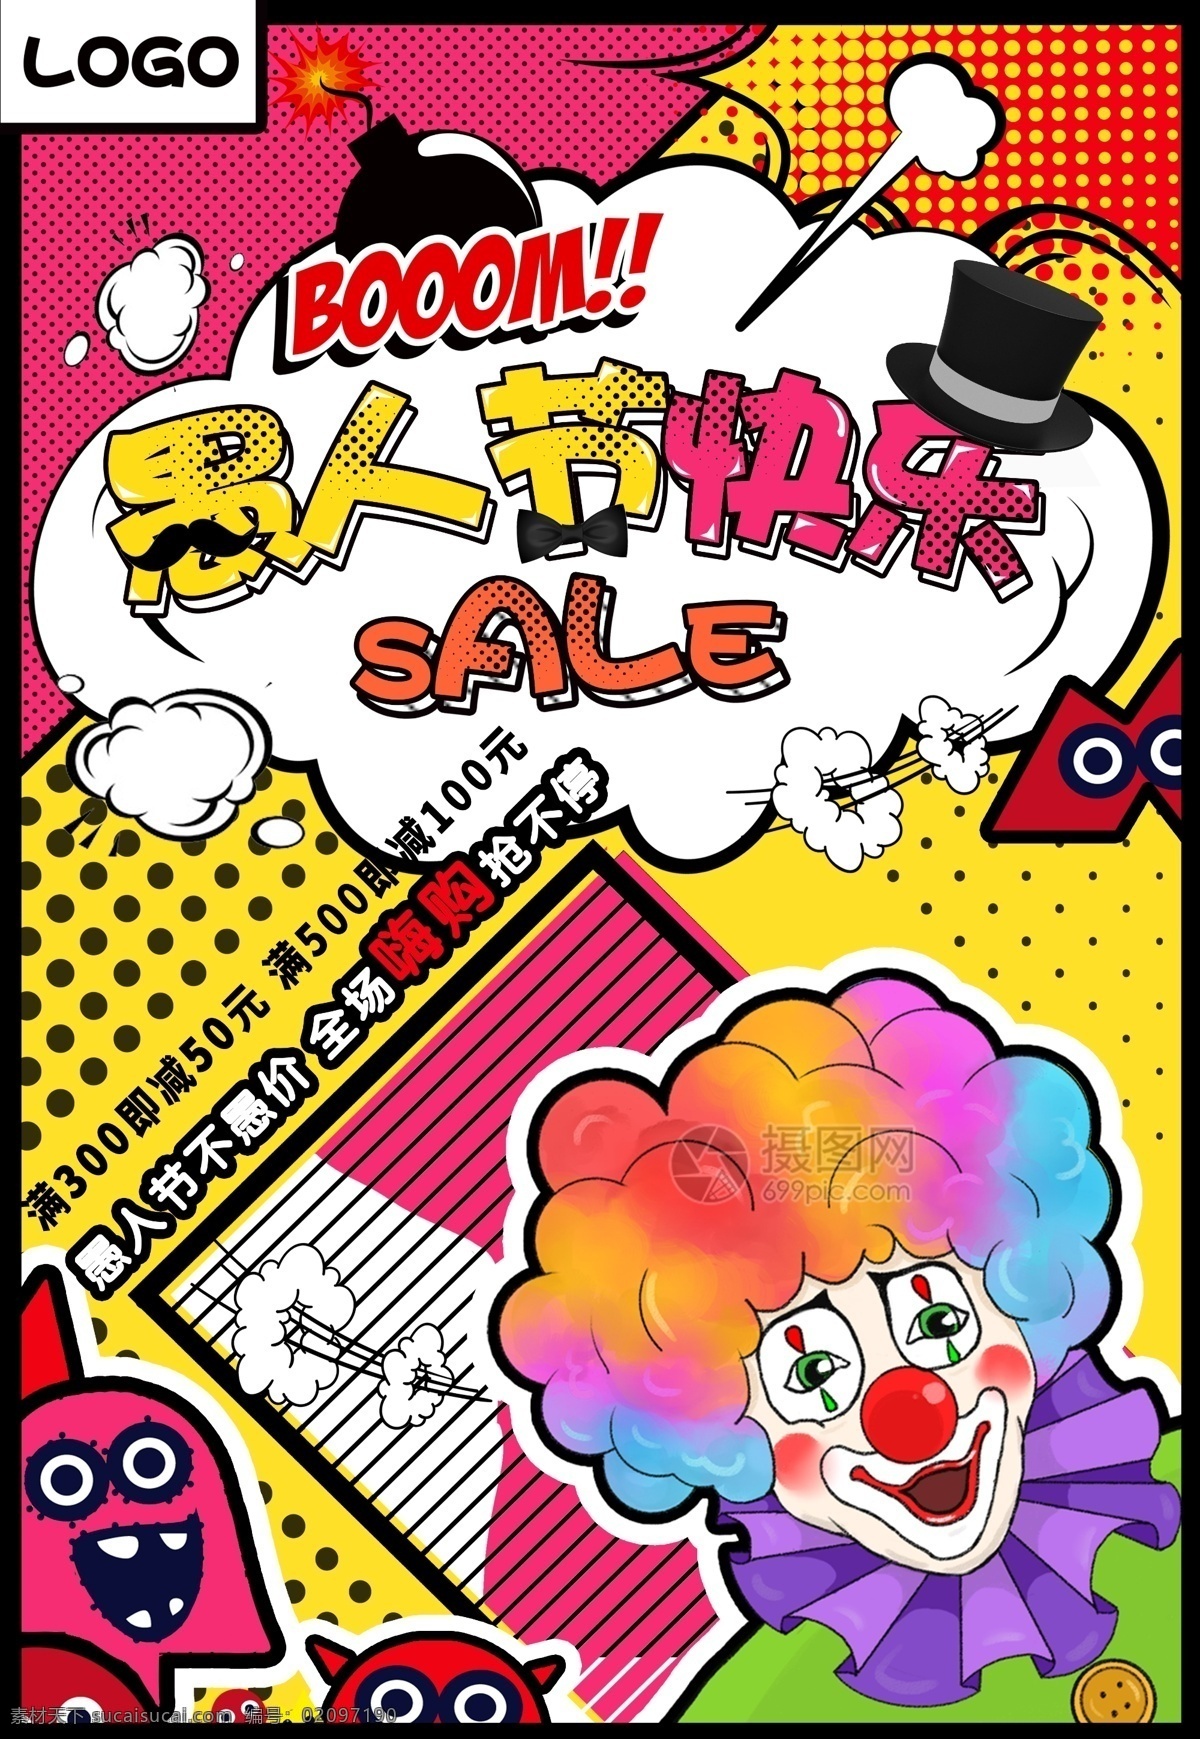 手绘 创意 愚人节 海报 炸弹 插画 小丑 搞笑 宣传 促销海报 孟菲斯